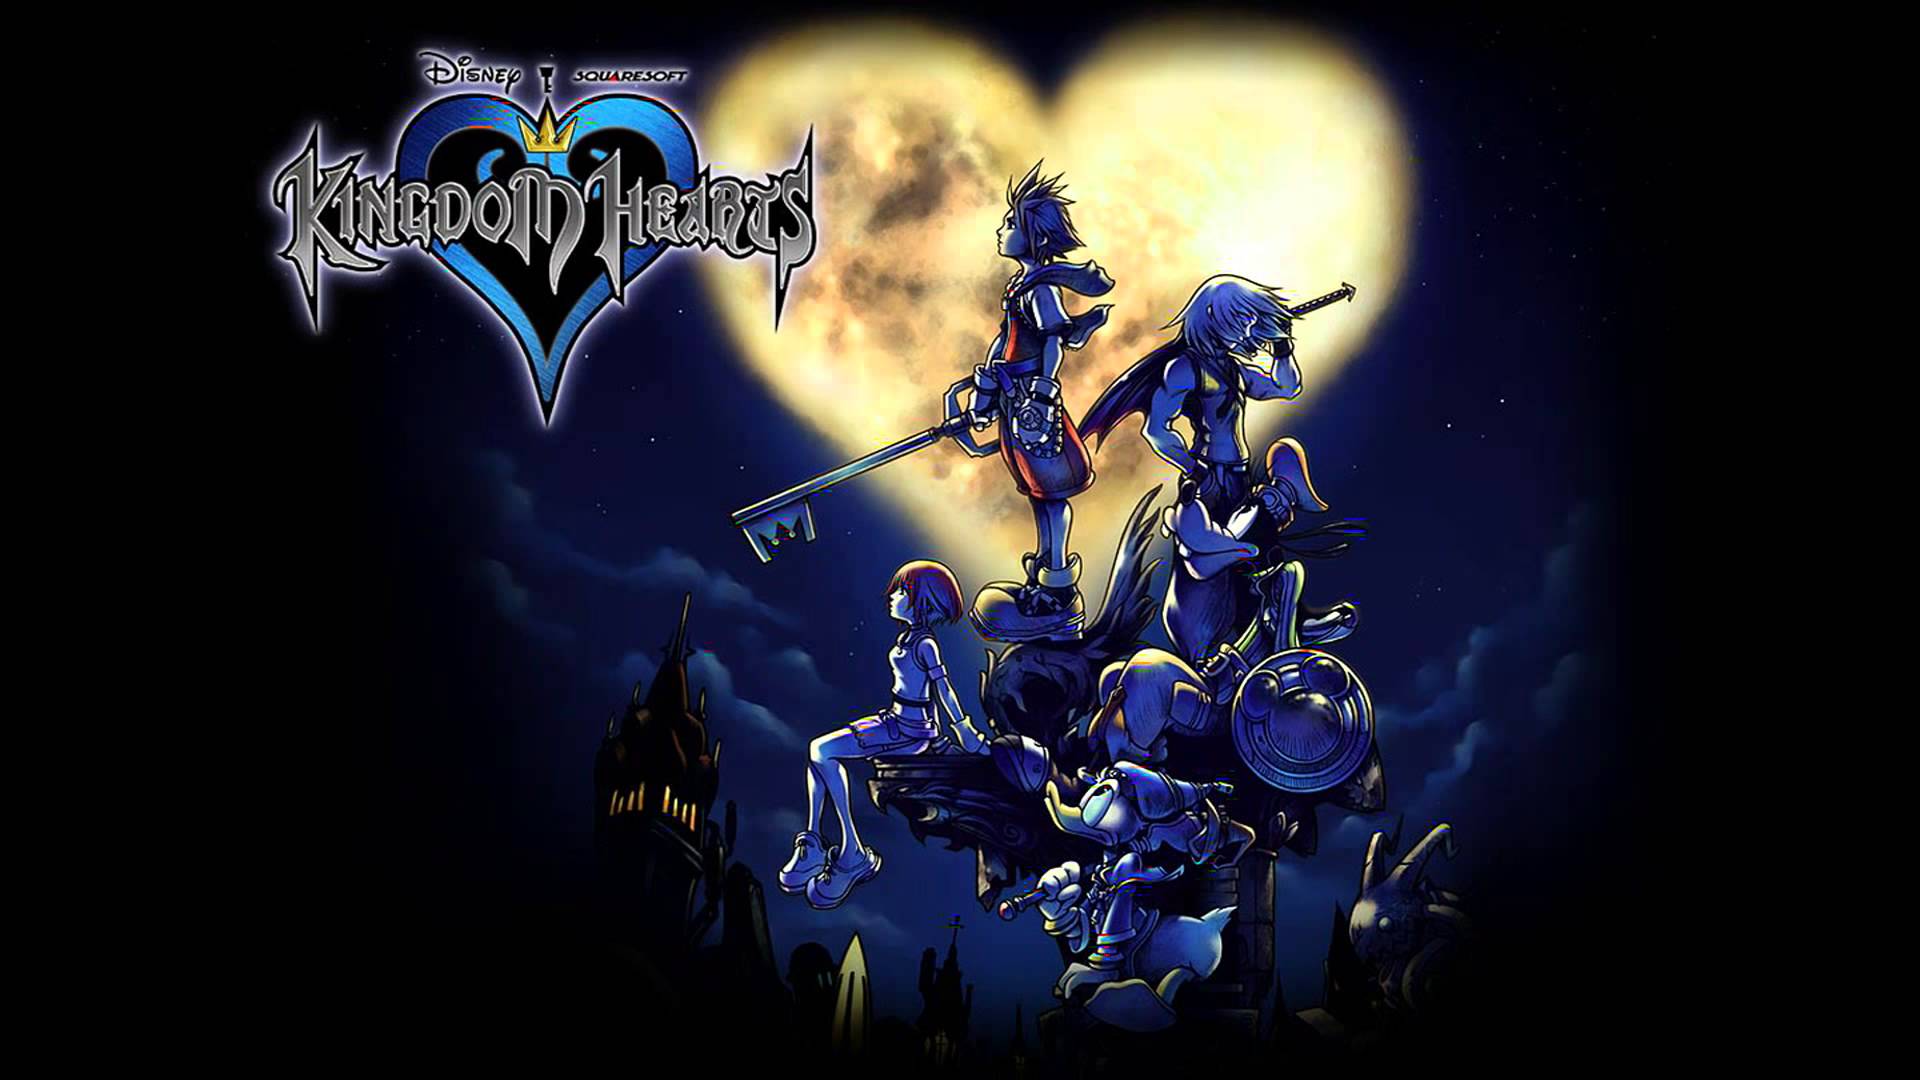 Скачать обои бесплатно Видеоигры, Kingdom Hearts картинка на рабочий стол ПК